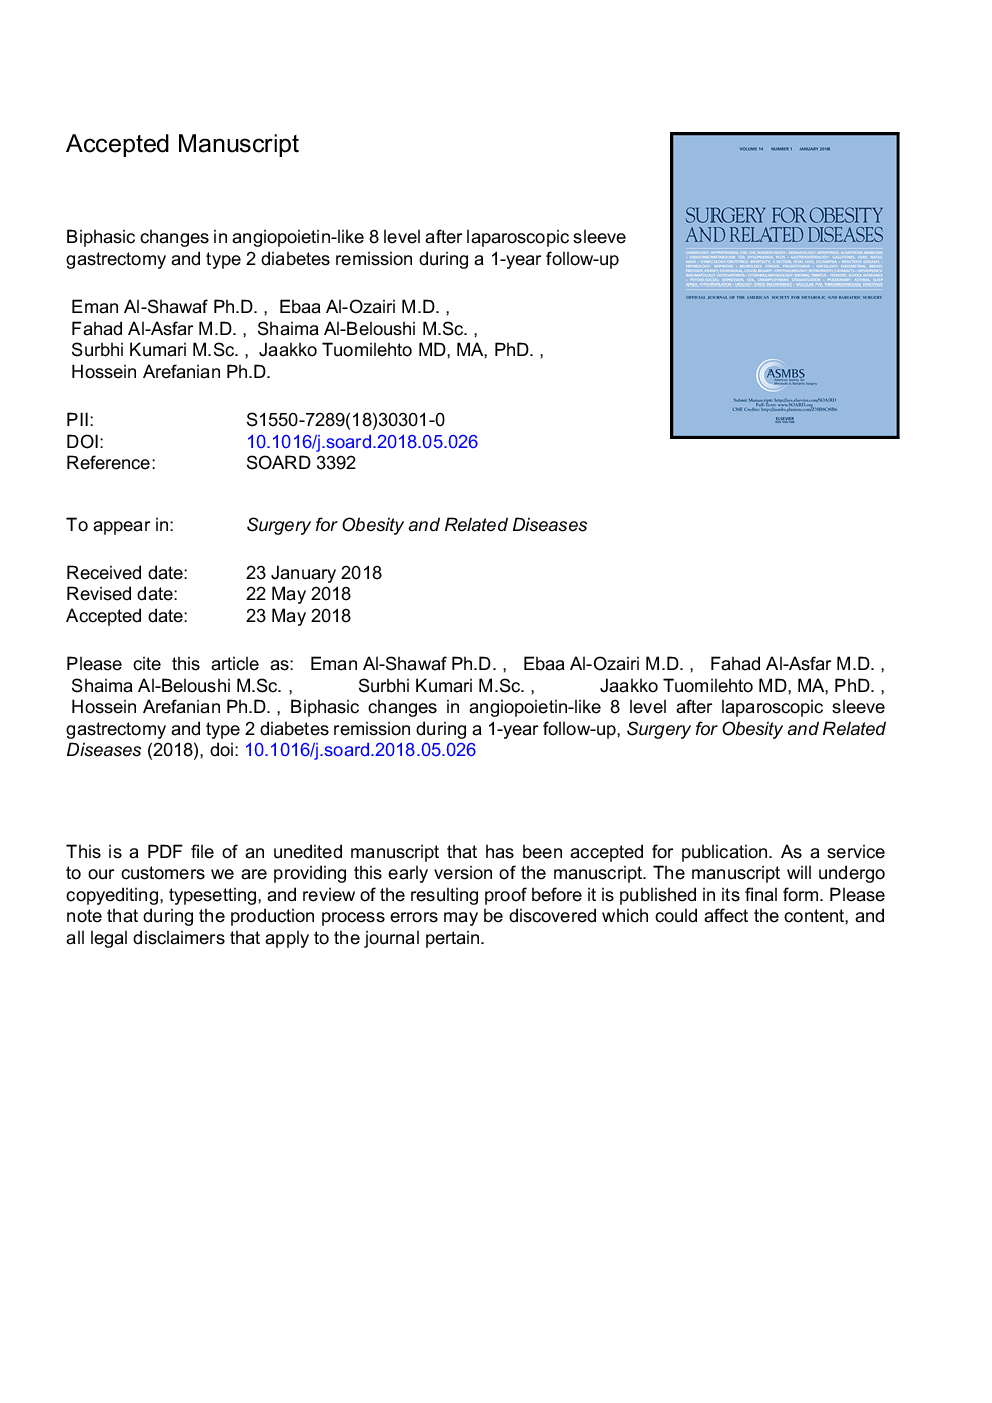 تغییرات دو جانبه در سطح آنژیوپوئیتین مانند سطح 8 پس از گاسترکتومی آستین لاپاروسکوپی و دیابت نوع 2 در طی پیگیری 1 ساله